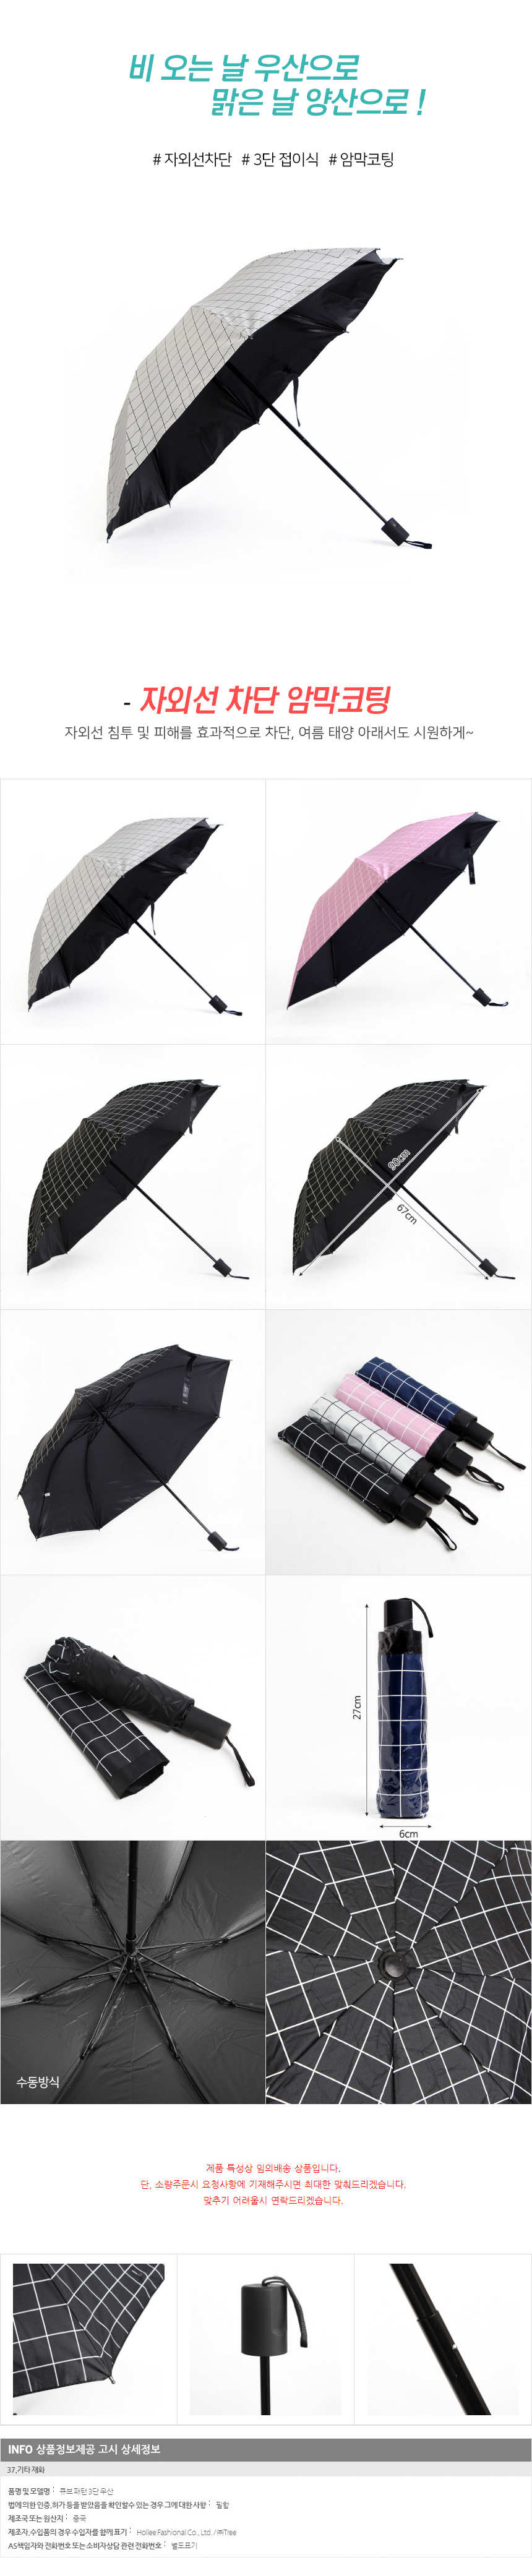 큐브 패턴 양산겸용 3단 우산/자외선차단 수동우산